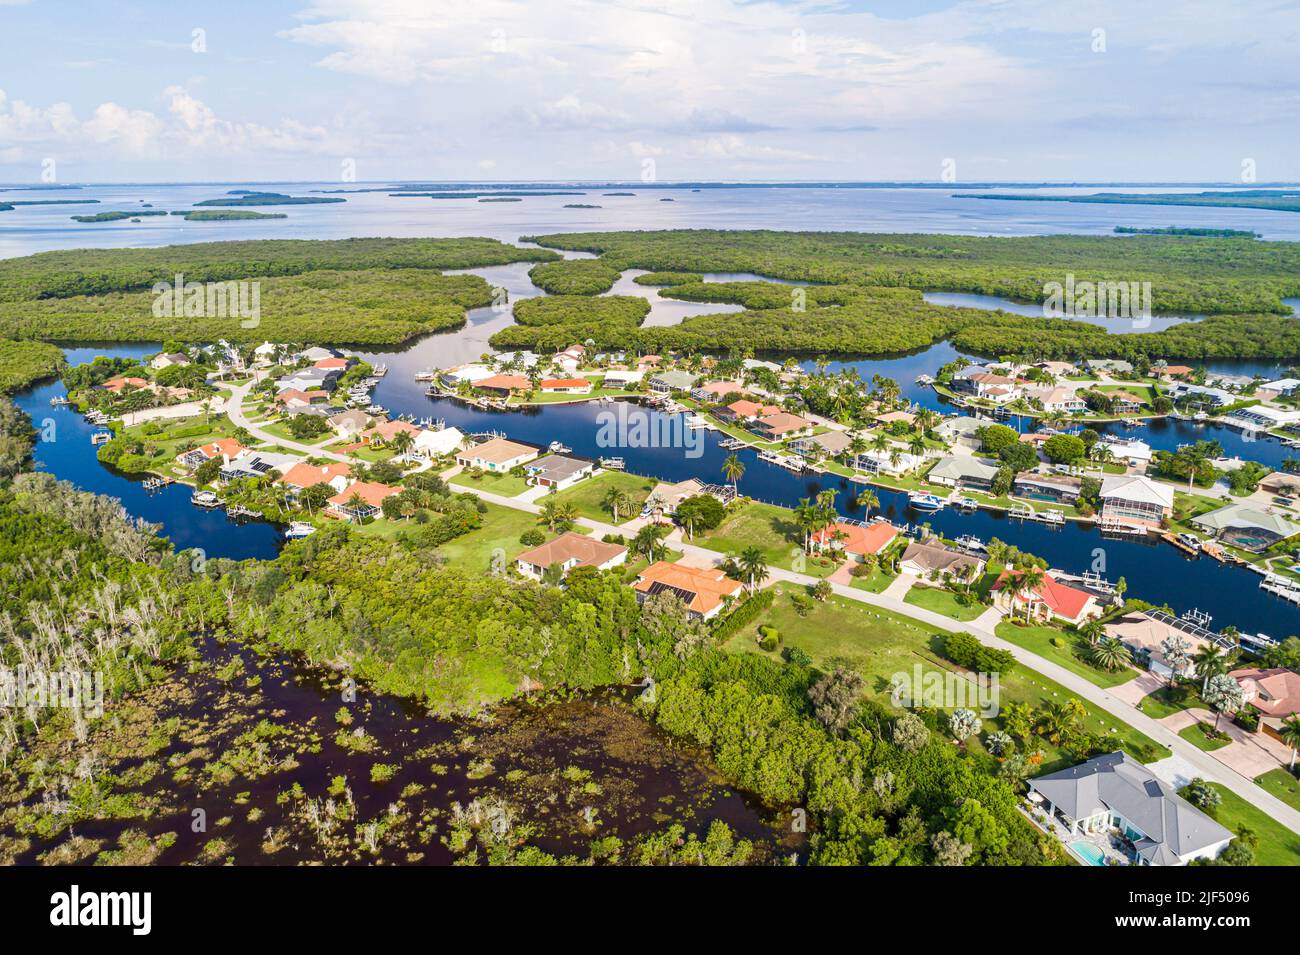 Fort Ft. Myers Florida, Palm acres casas de desarrollo casas de vecindad invadment, Caloosahatchee River humedales Golfo de México Big Shell Island Kin Foto de stock